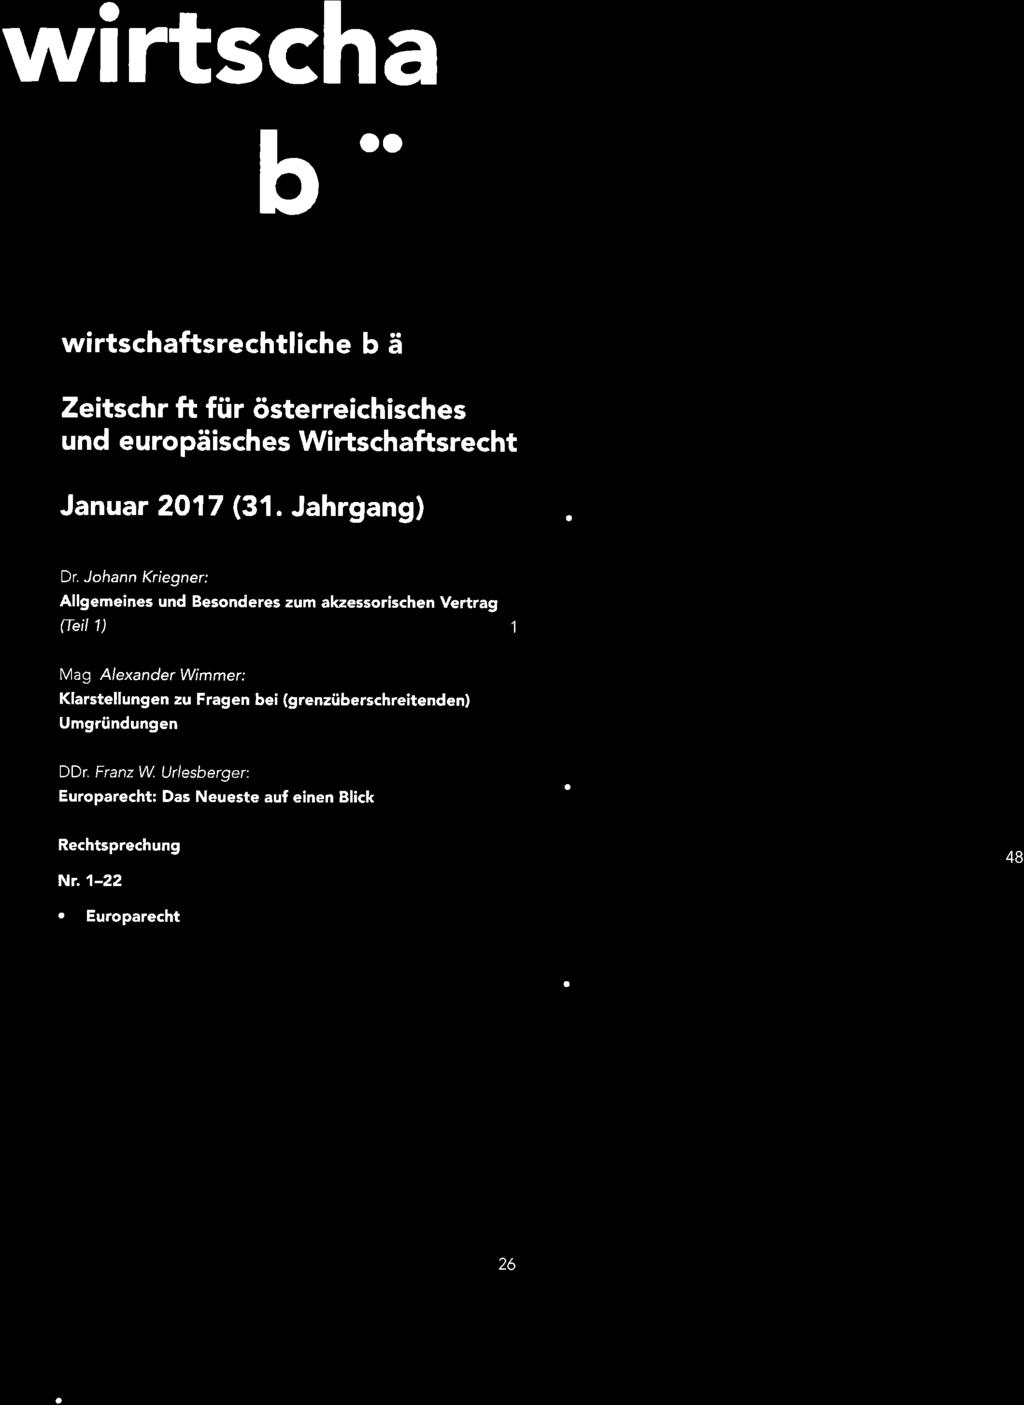 w rtschaftsrecysz o ô z bl oo wirtschaftsrechtliche blä Zeitschrift für österreichisches und europäisches Wirtschaftsrecht Januar 2017 (31. Jahrgang) Dr.